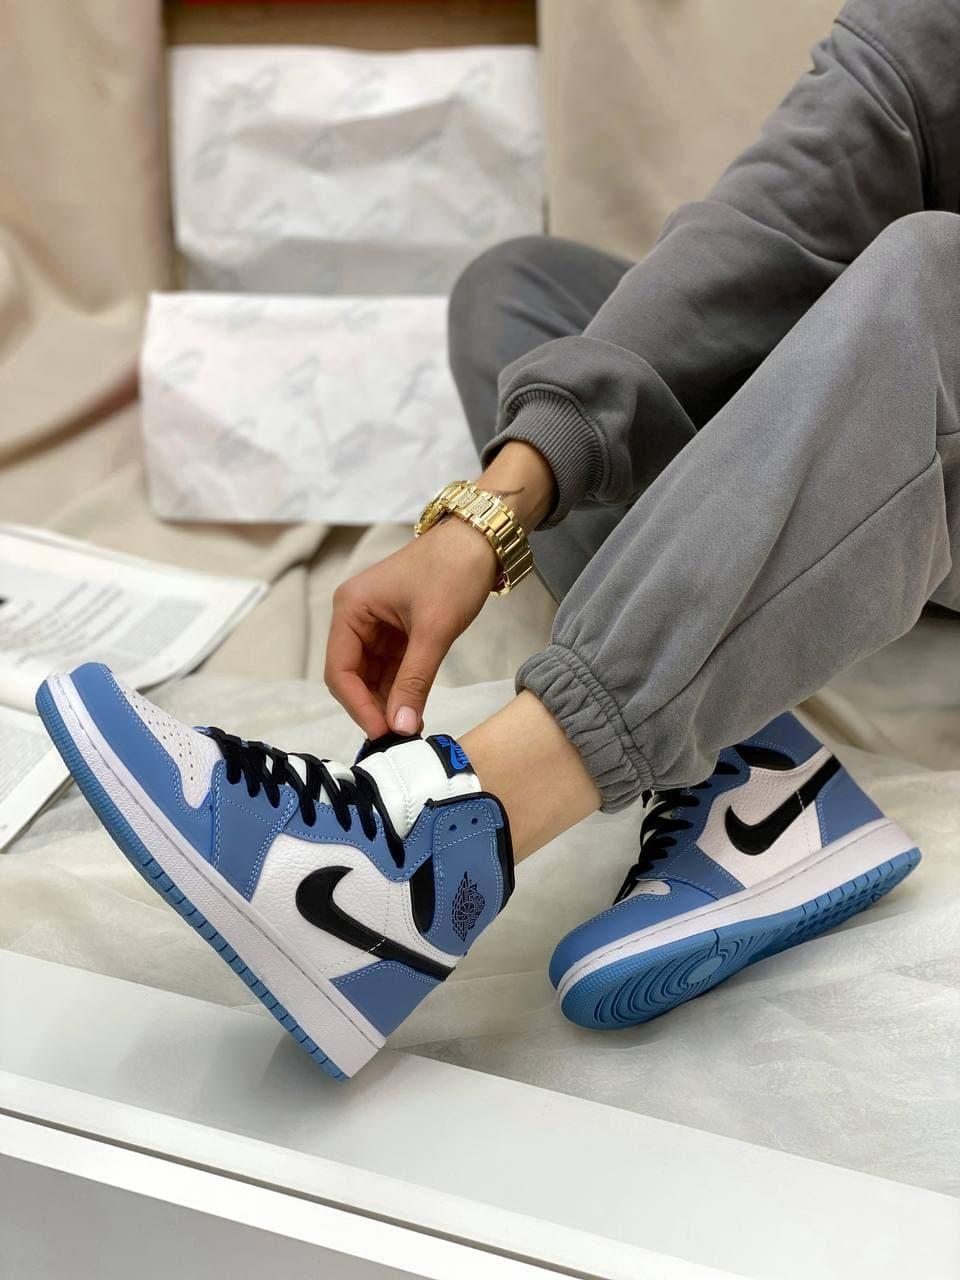 Чоловічі кросівки Nike Air Jordan Retro High University Blue (синьо-білі) NJ012 високі якісні кроси